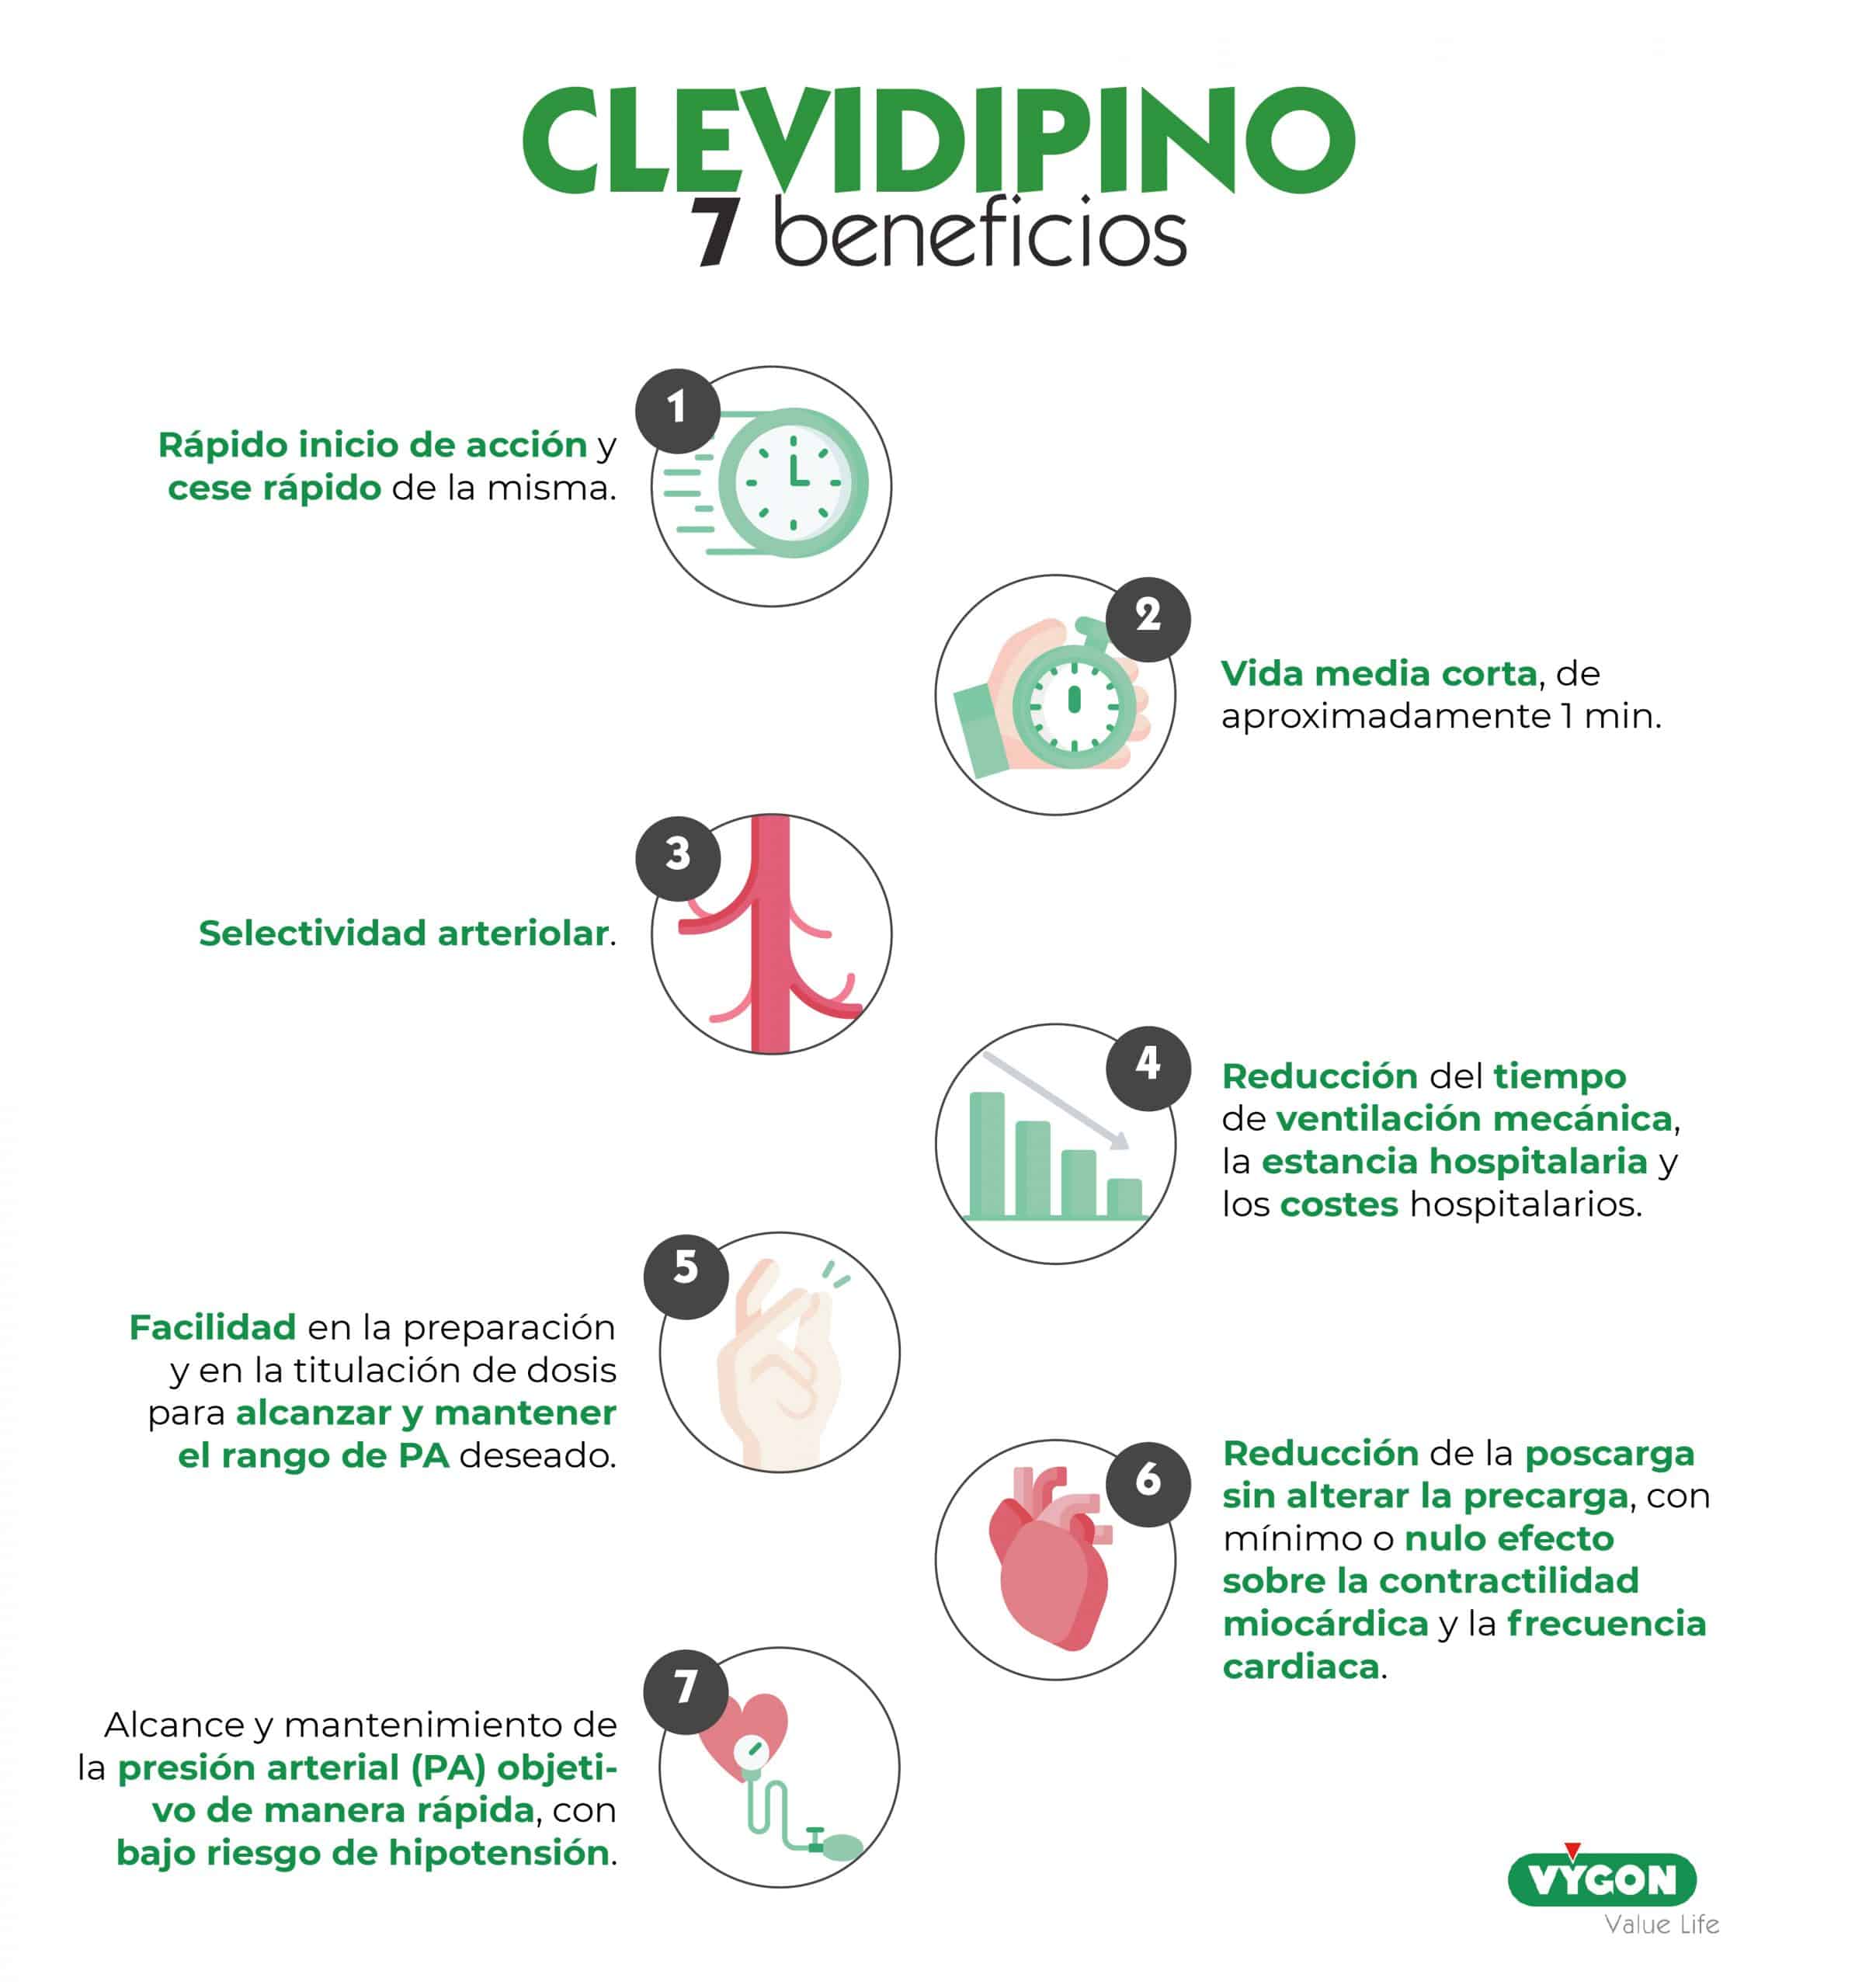 Clevidipino 7 beneficios